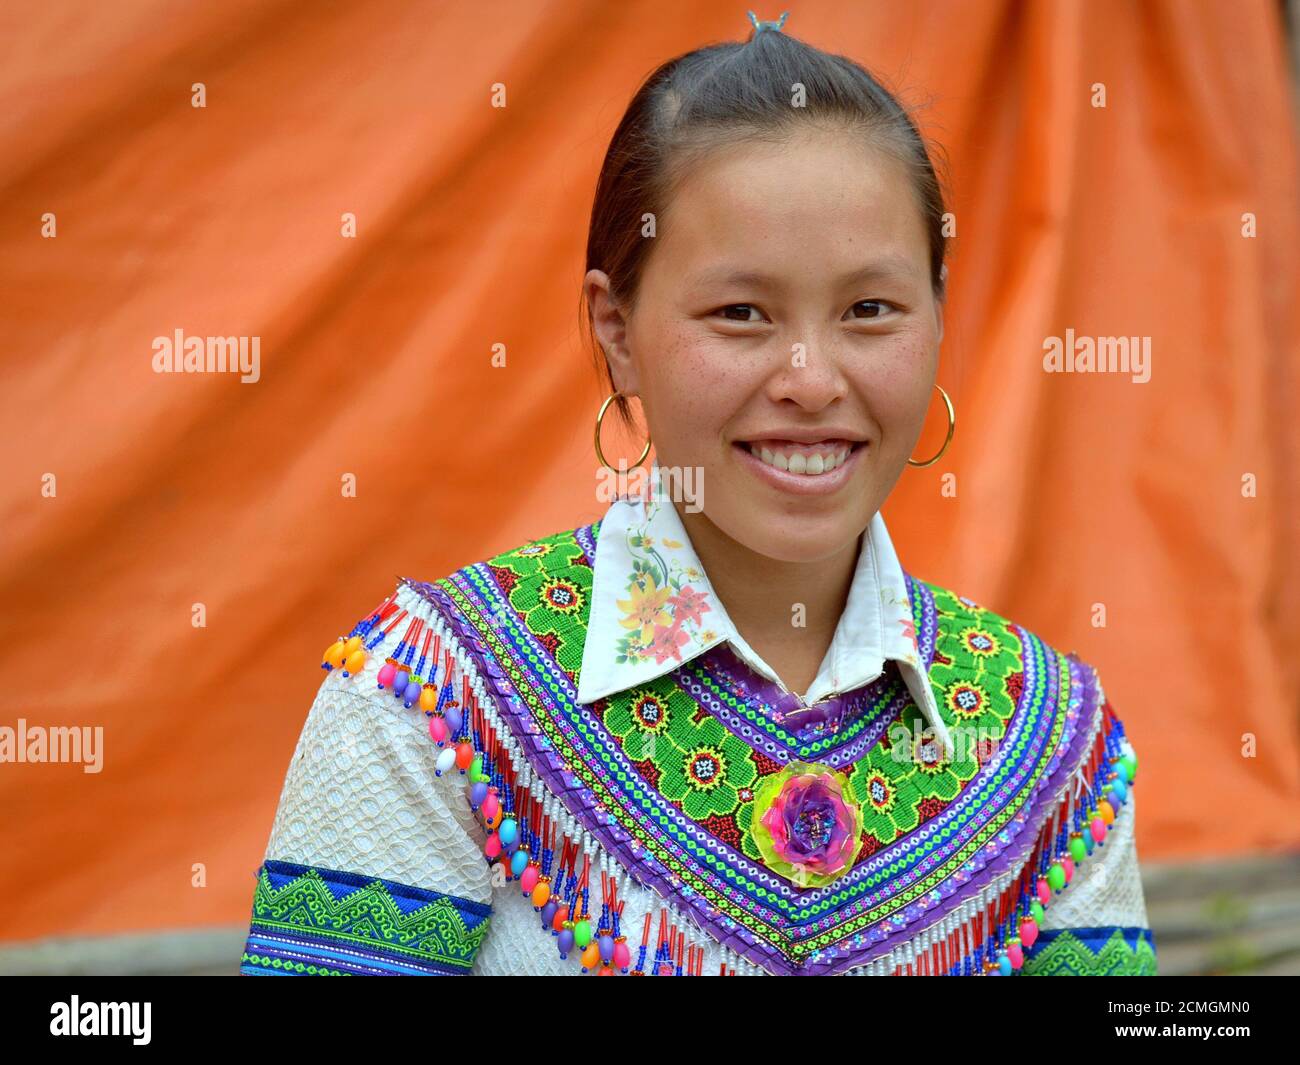 Junge vietnamesische Hmong ethnische Minderheit Hügel-Stamm Frau mit goldenen Reifen Ohrringe trägt bunt bestickte traditionelle Kleidung. Stockfoto